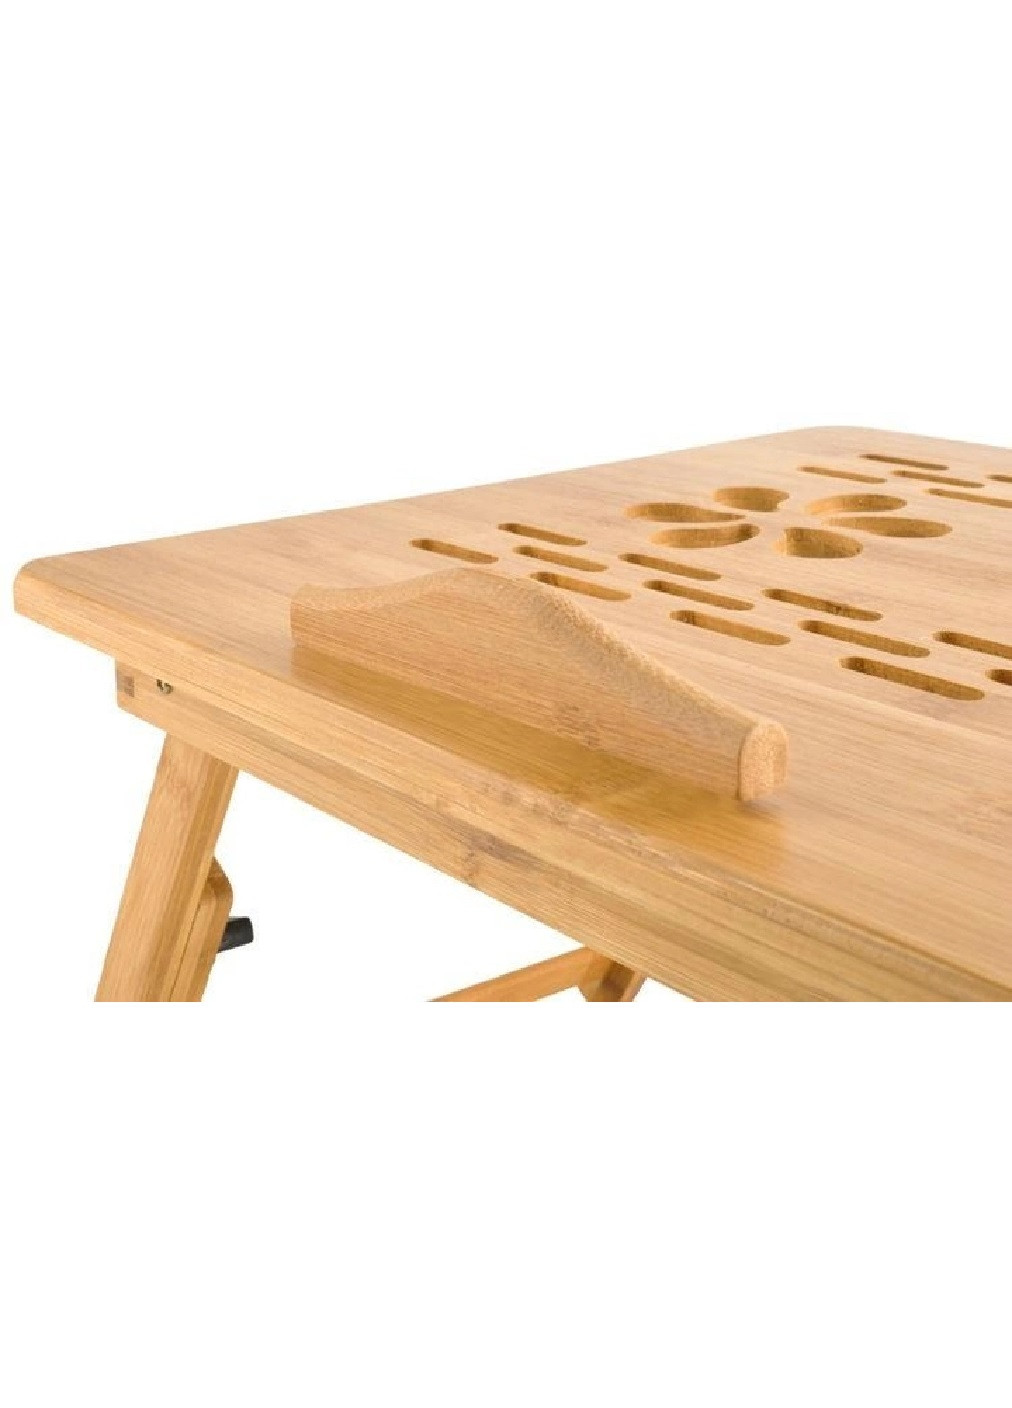 Розкладний регульований столик компактний портативний дерев'яний для ноутбука сніданку 69х34,6х26,5 см (475204-Prob) Unbranded (263135967)